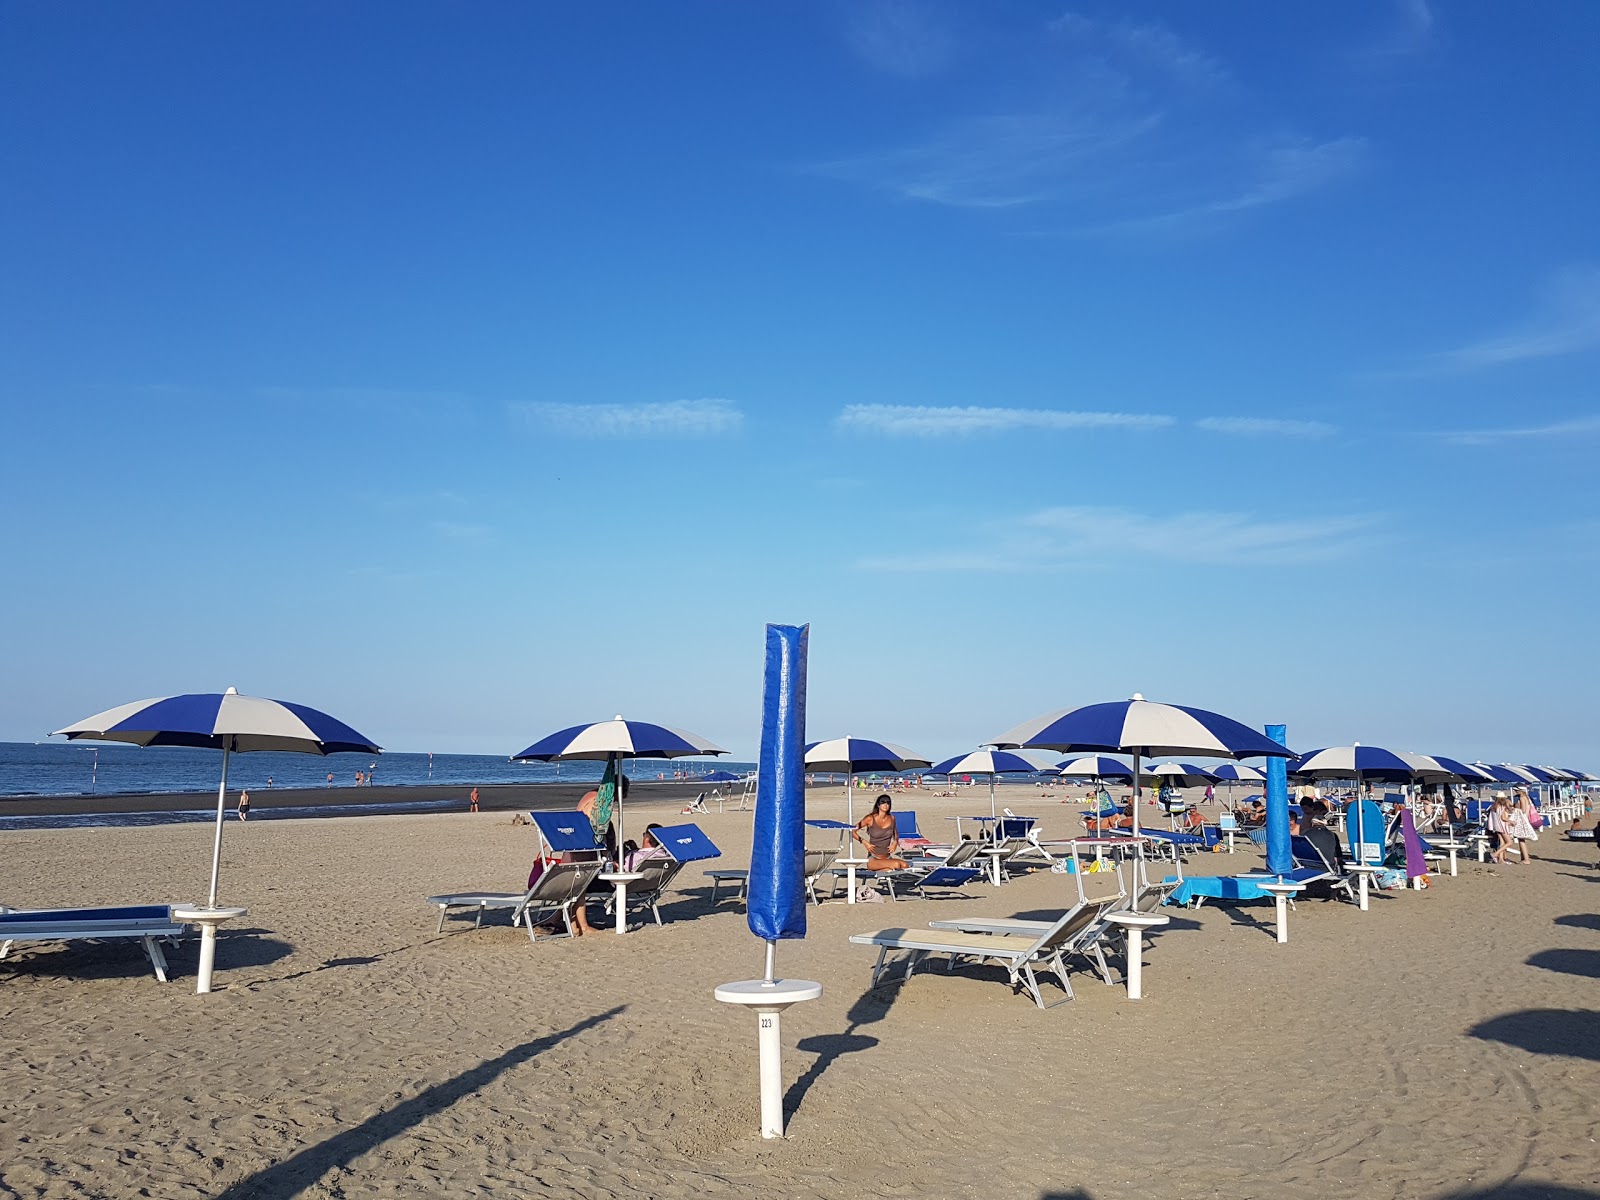 Foto af Spiaggia Isola Albarella - populært sted blandt afslapningskendere